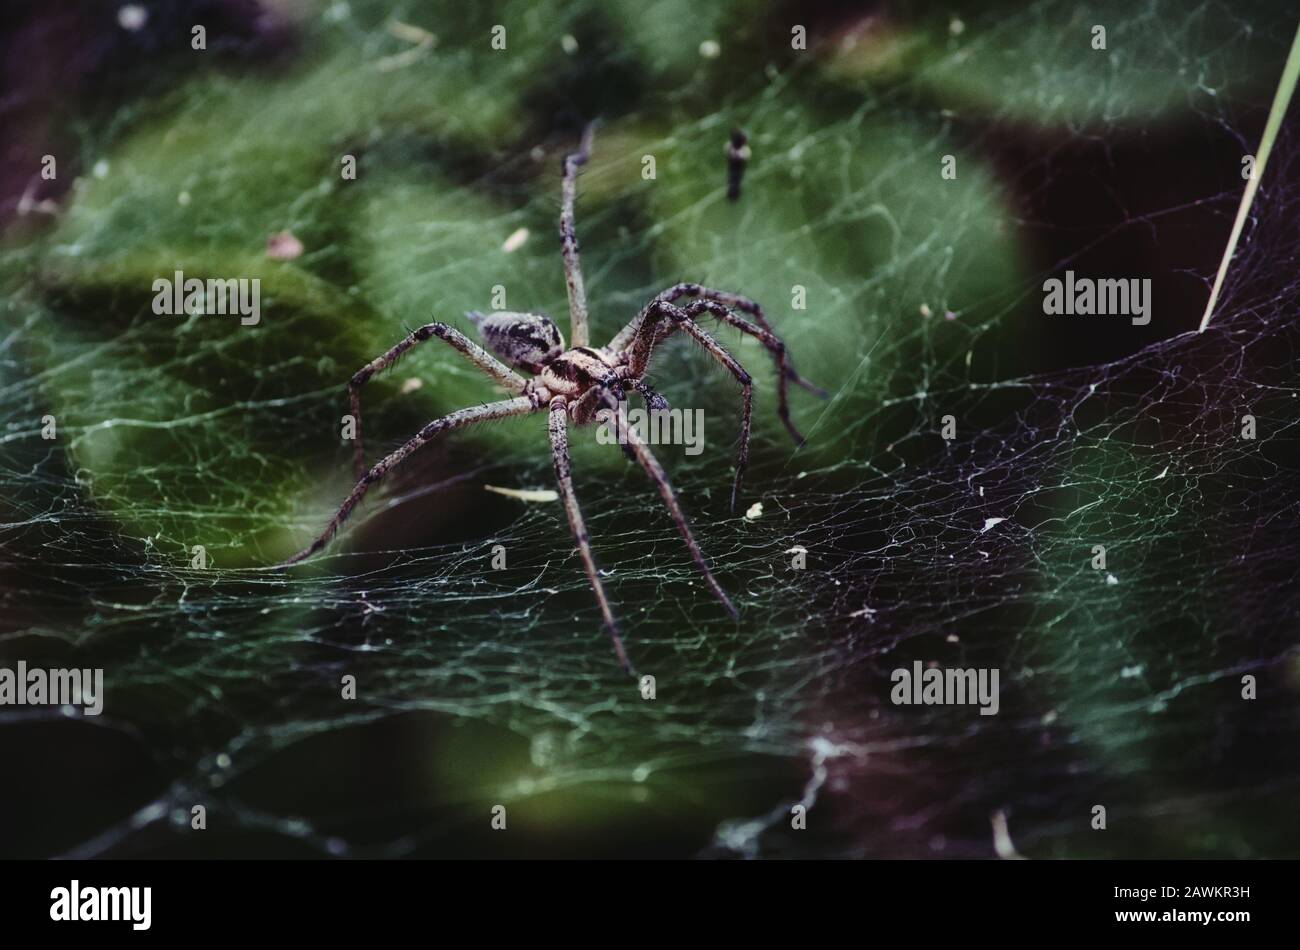 Große knollige Spinne, die auf einem Seidennetz krabbelt Stockfotografie -  Alamy